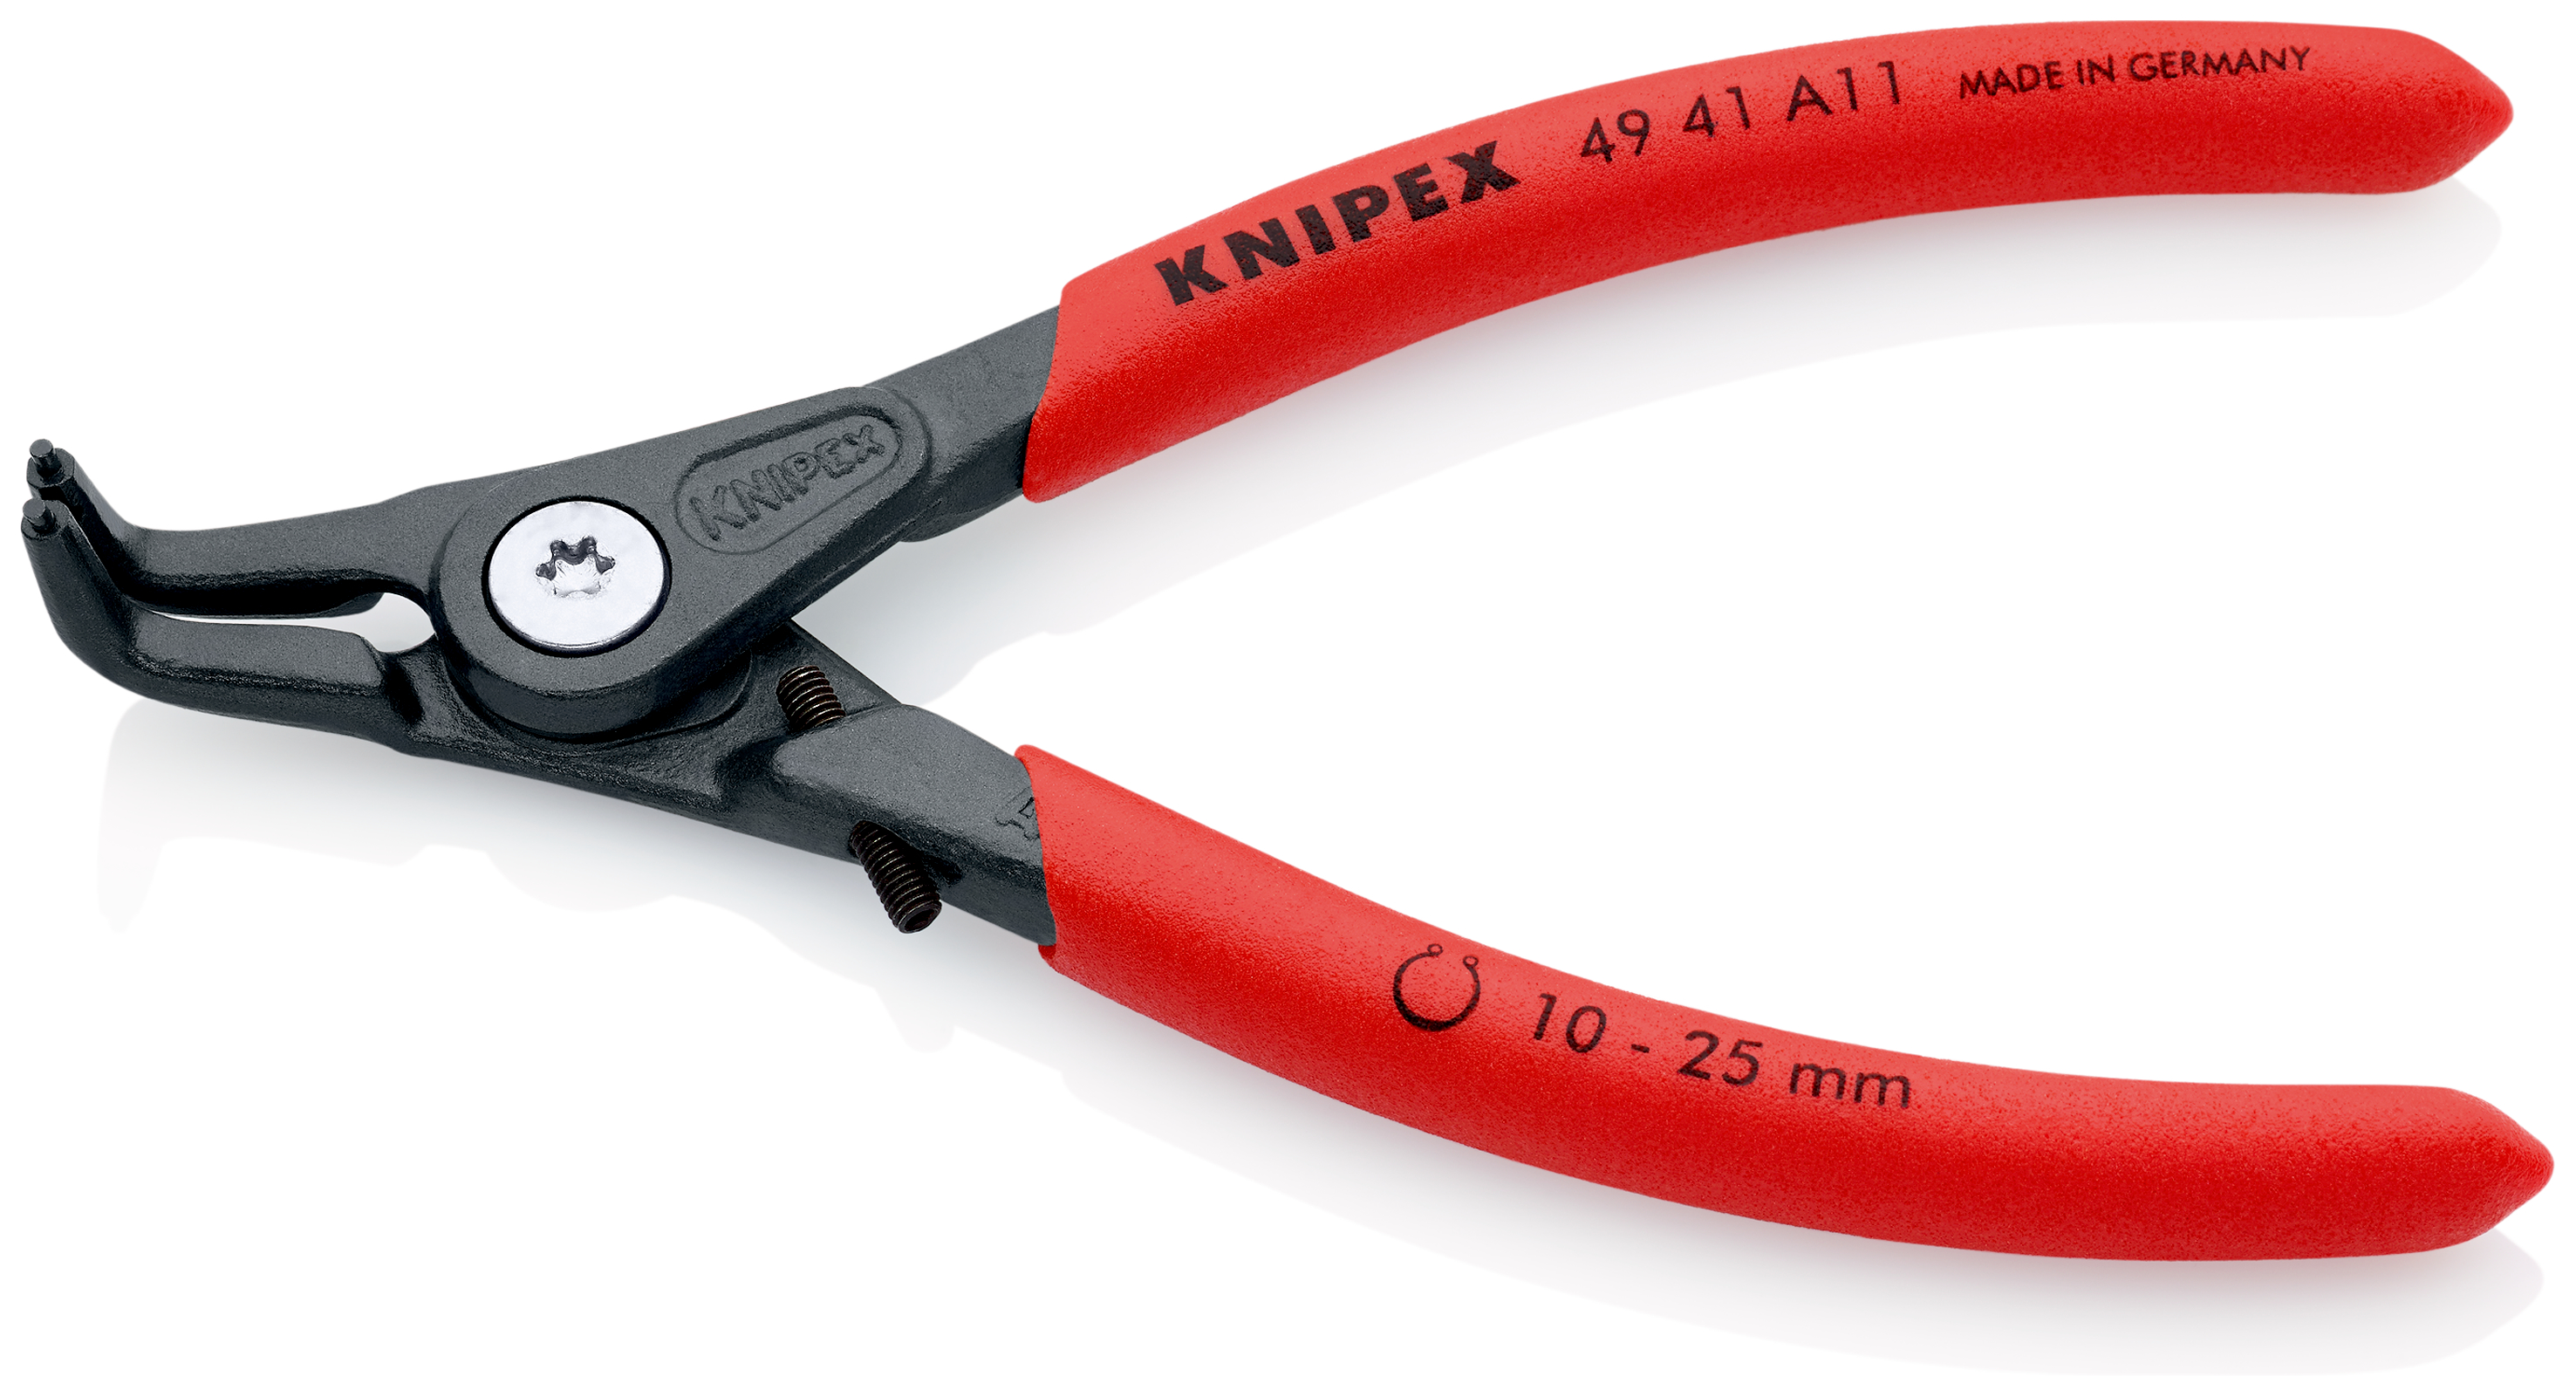 Knipex 4941A11 Cleste pentru inele de siguranță de exterior Ø 10 – 25 mm, lungime 130 mm